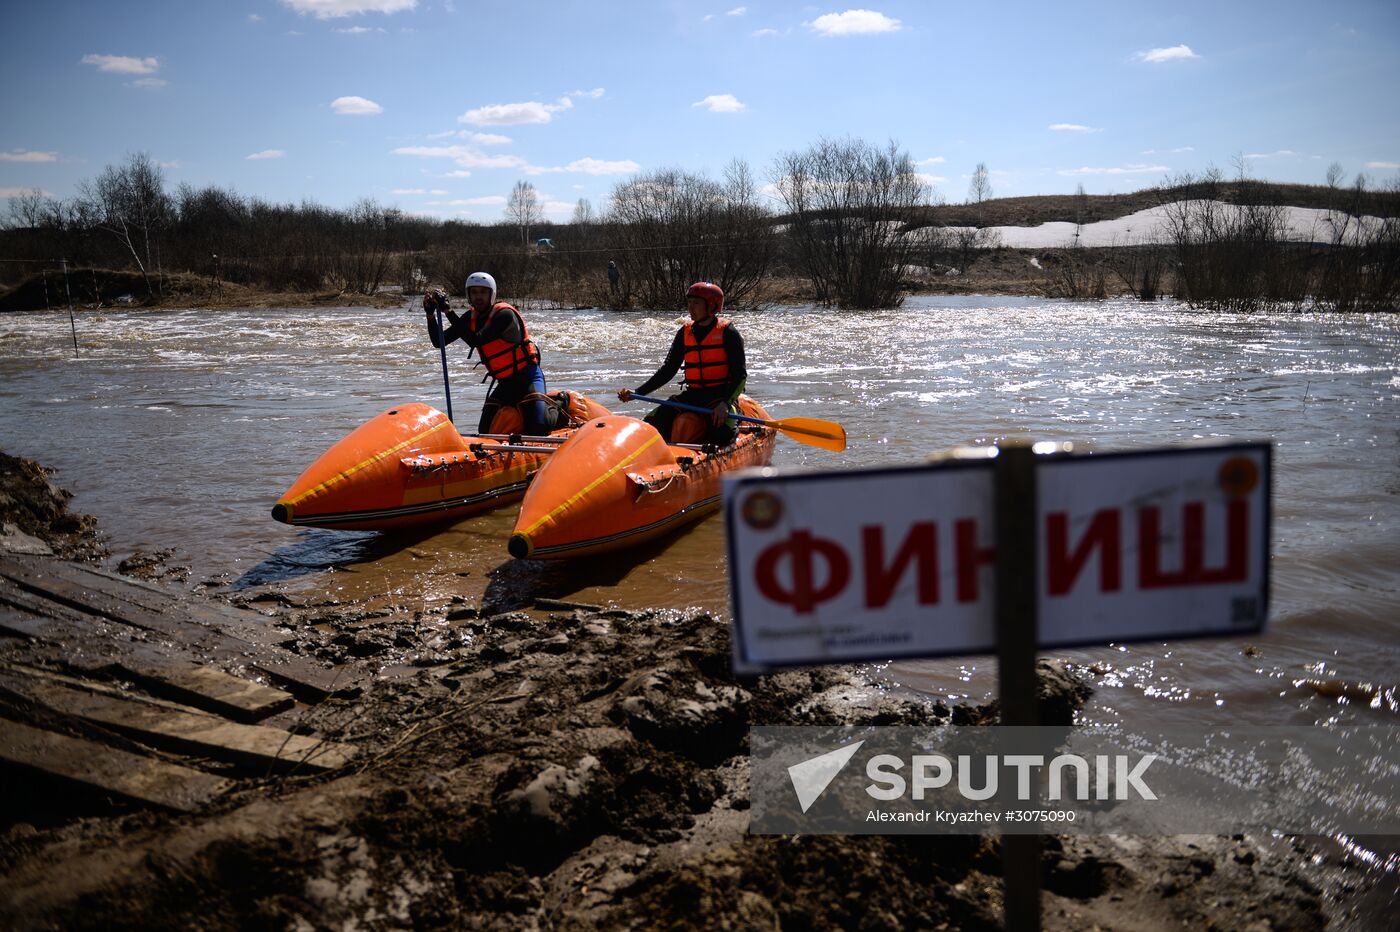 Sports Tourism Championship in Novosibirsk Region